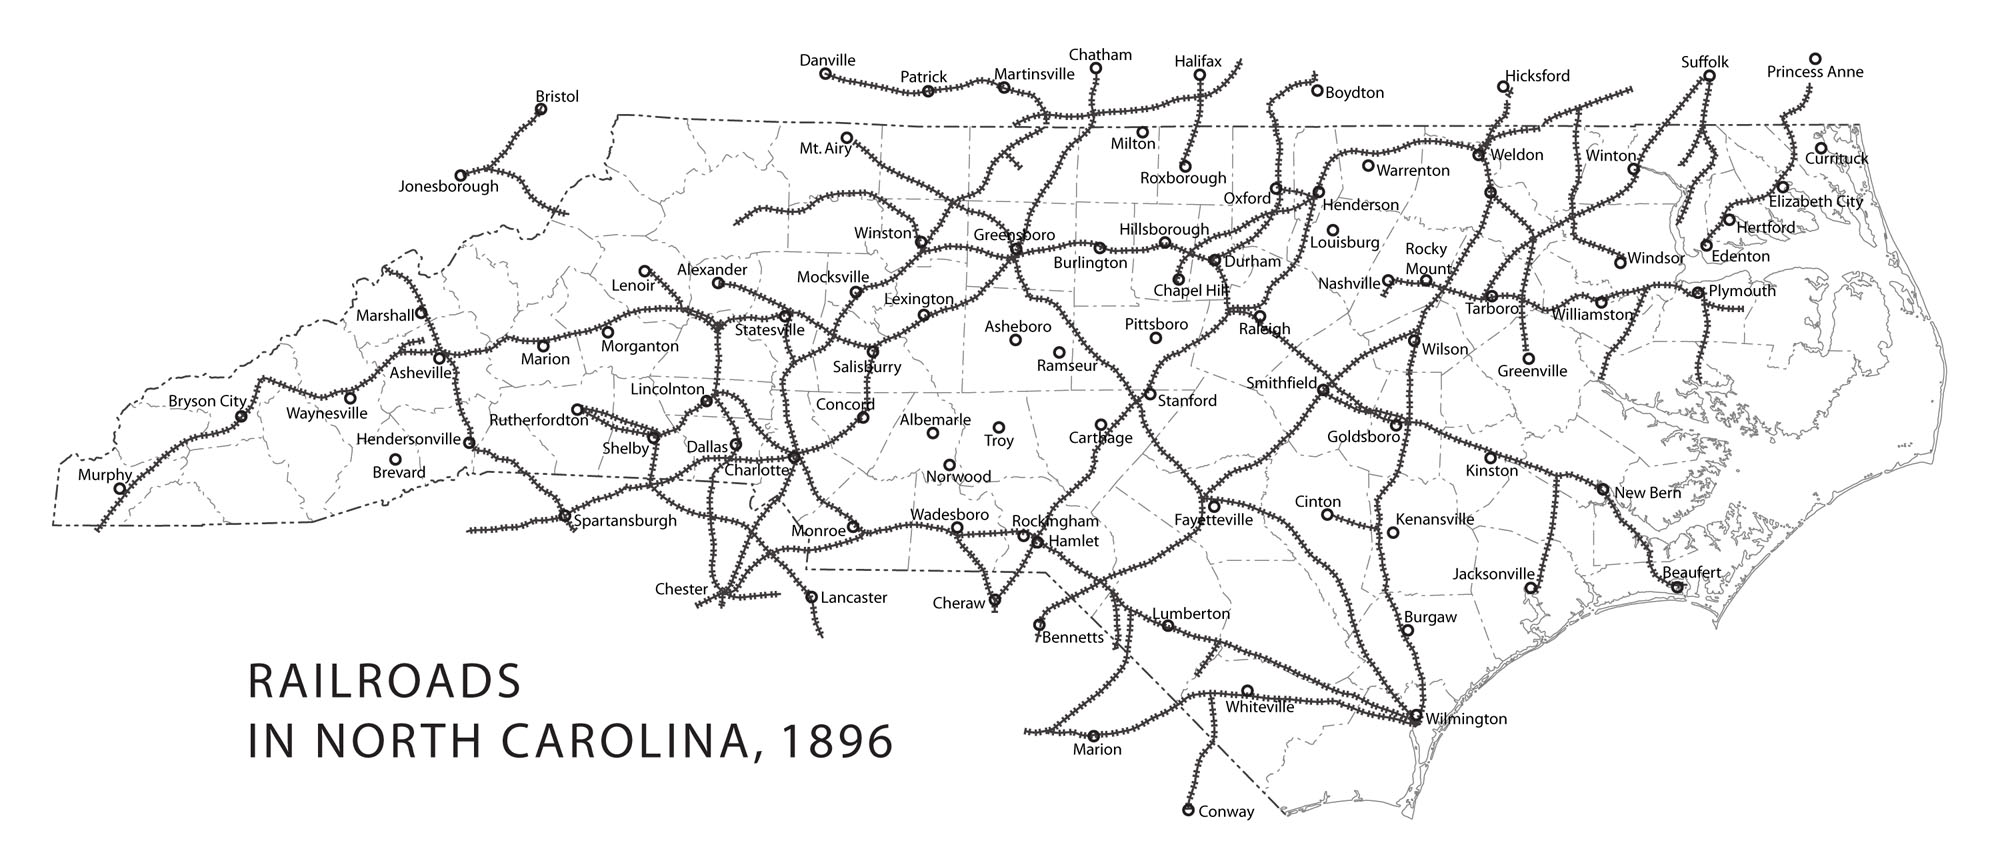 Map of railroads in North Carolina in 1896